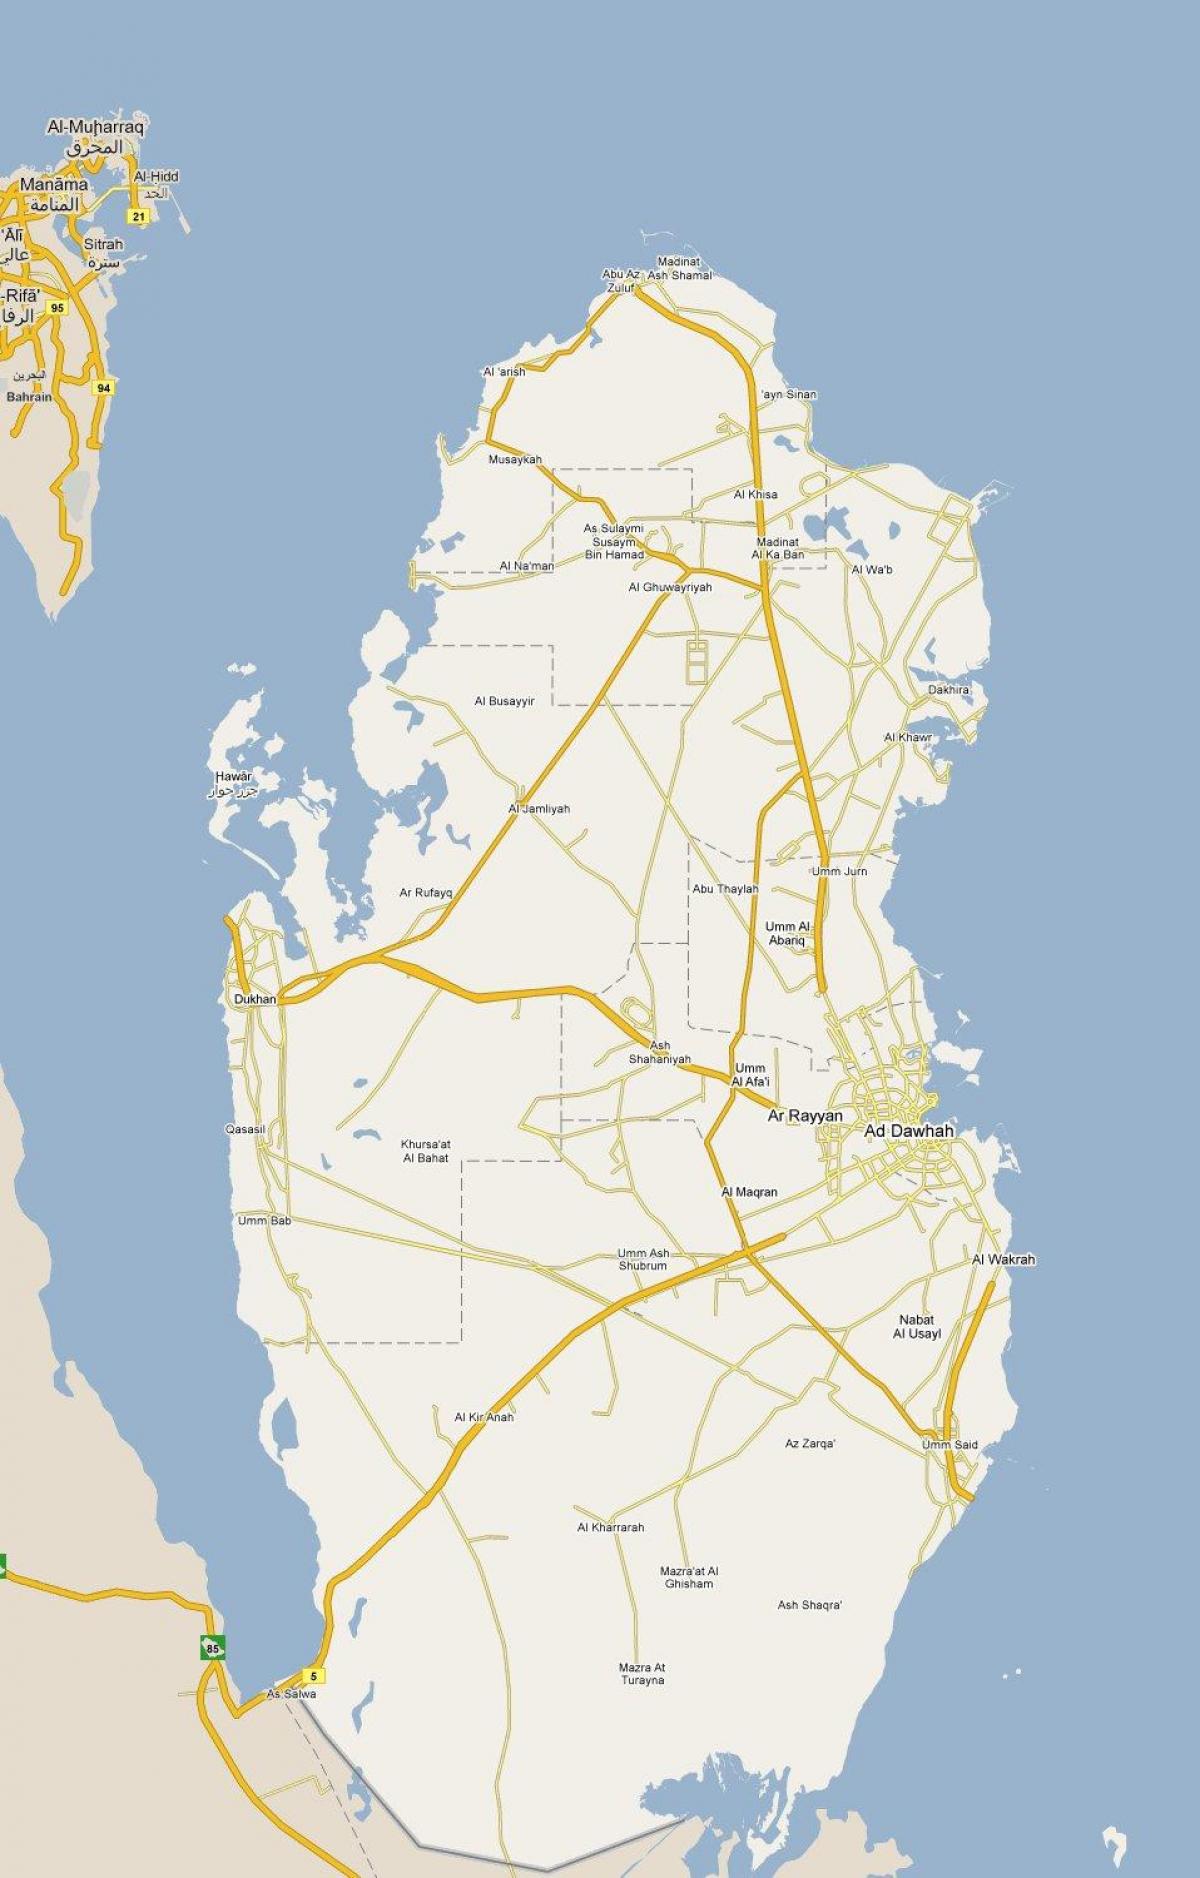 térkép mutatja katar